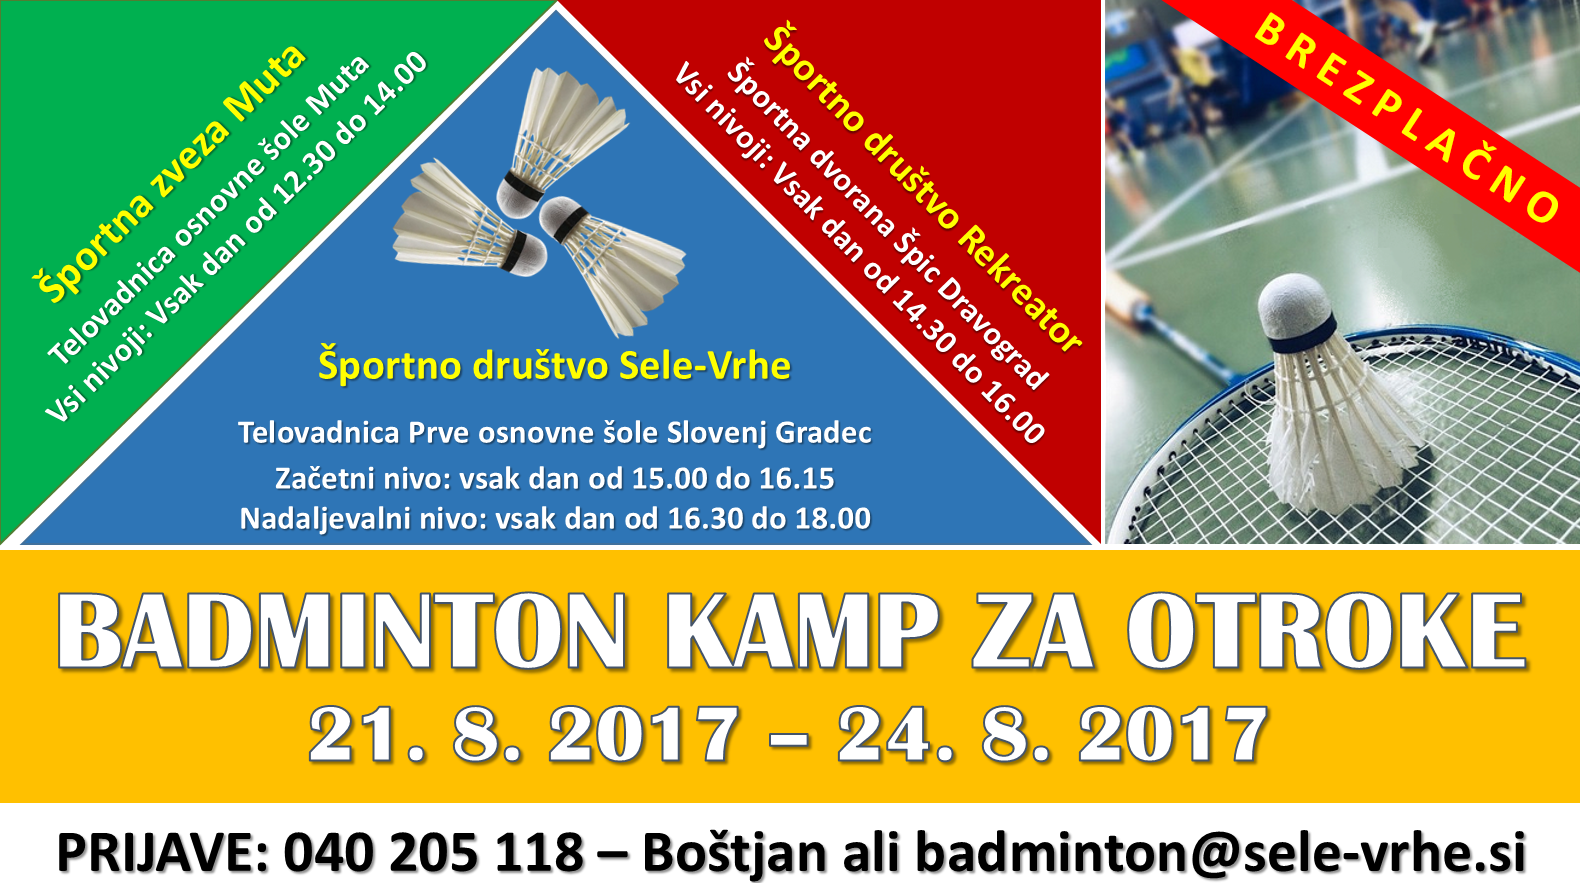 Badminton kamp 2017